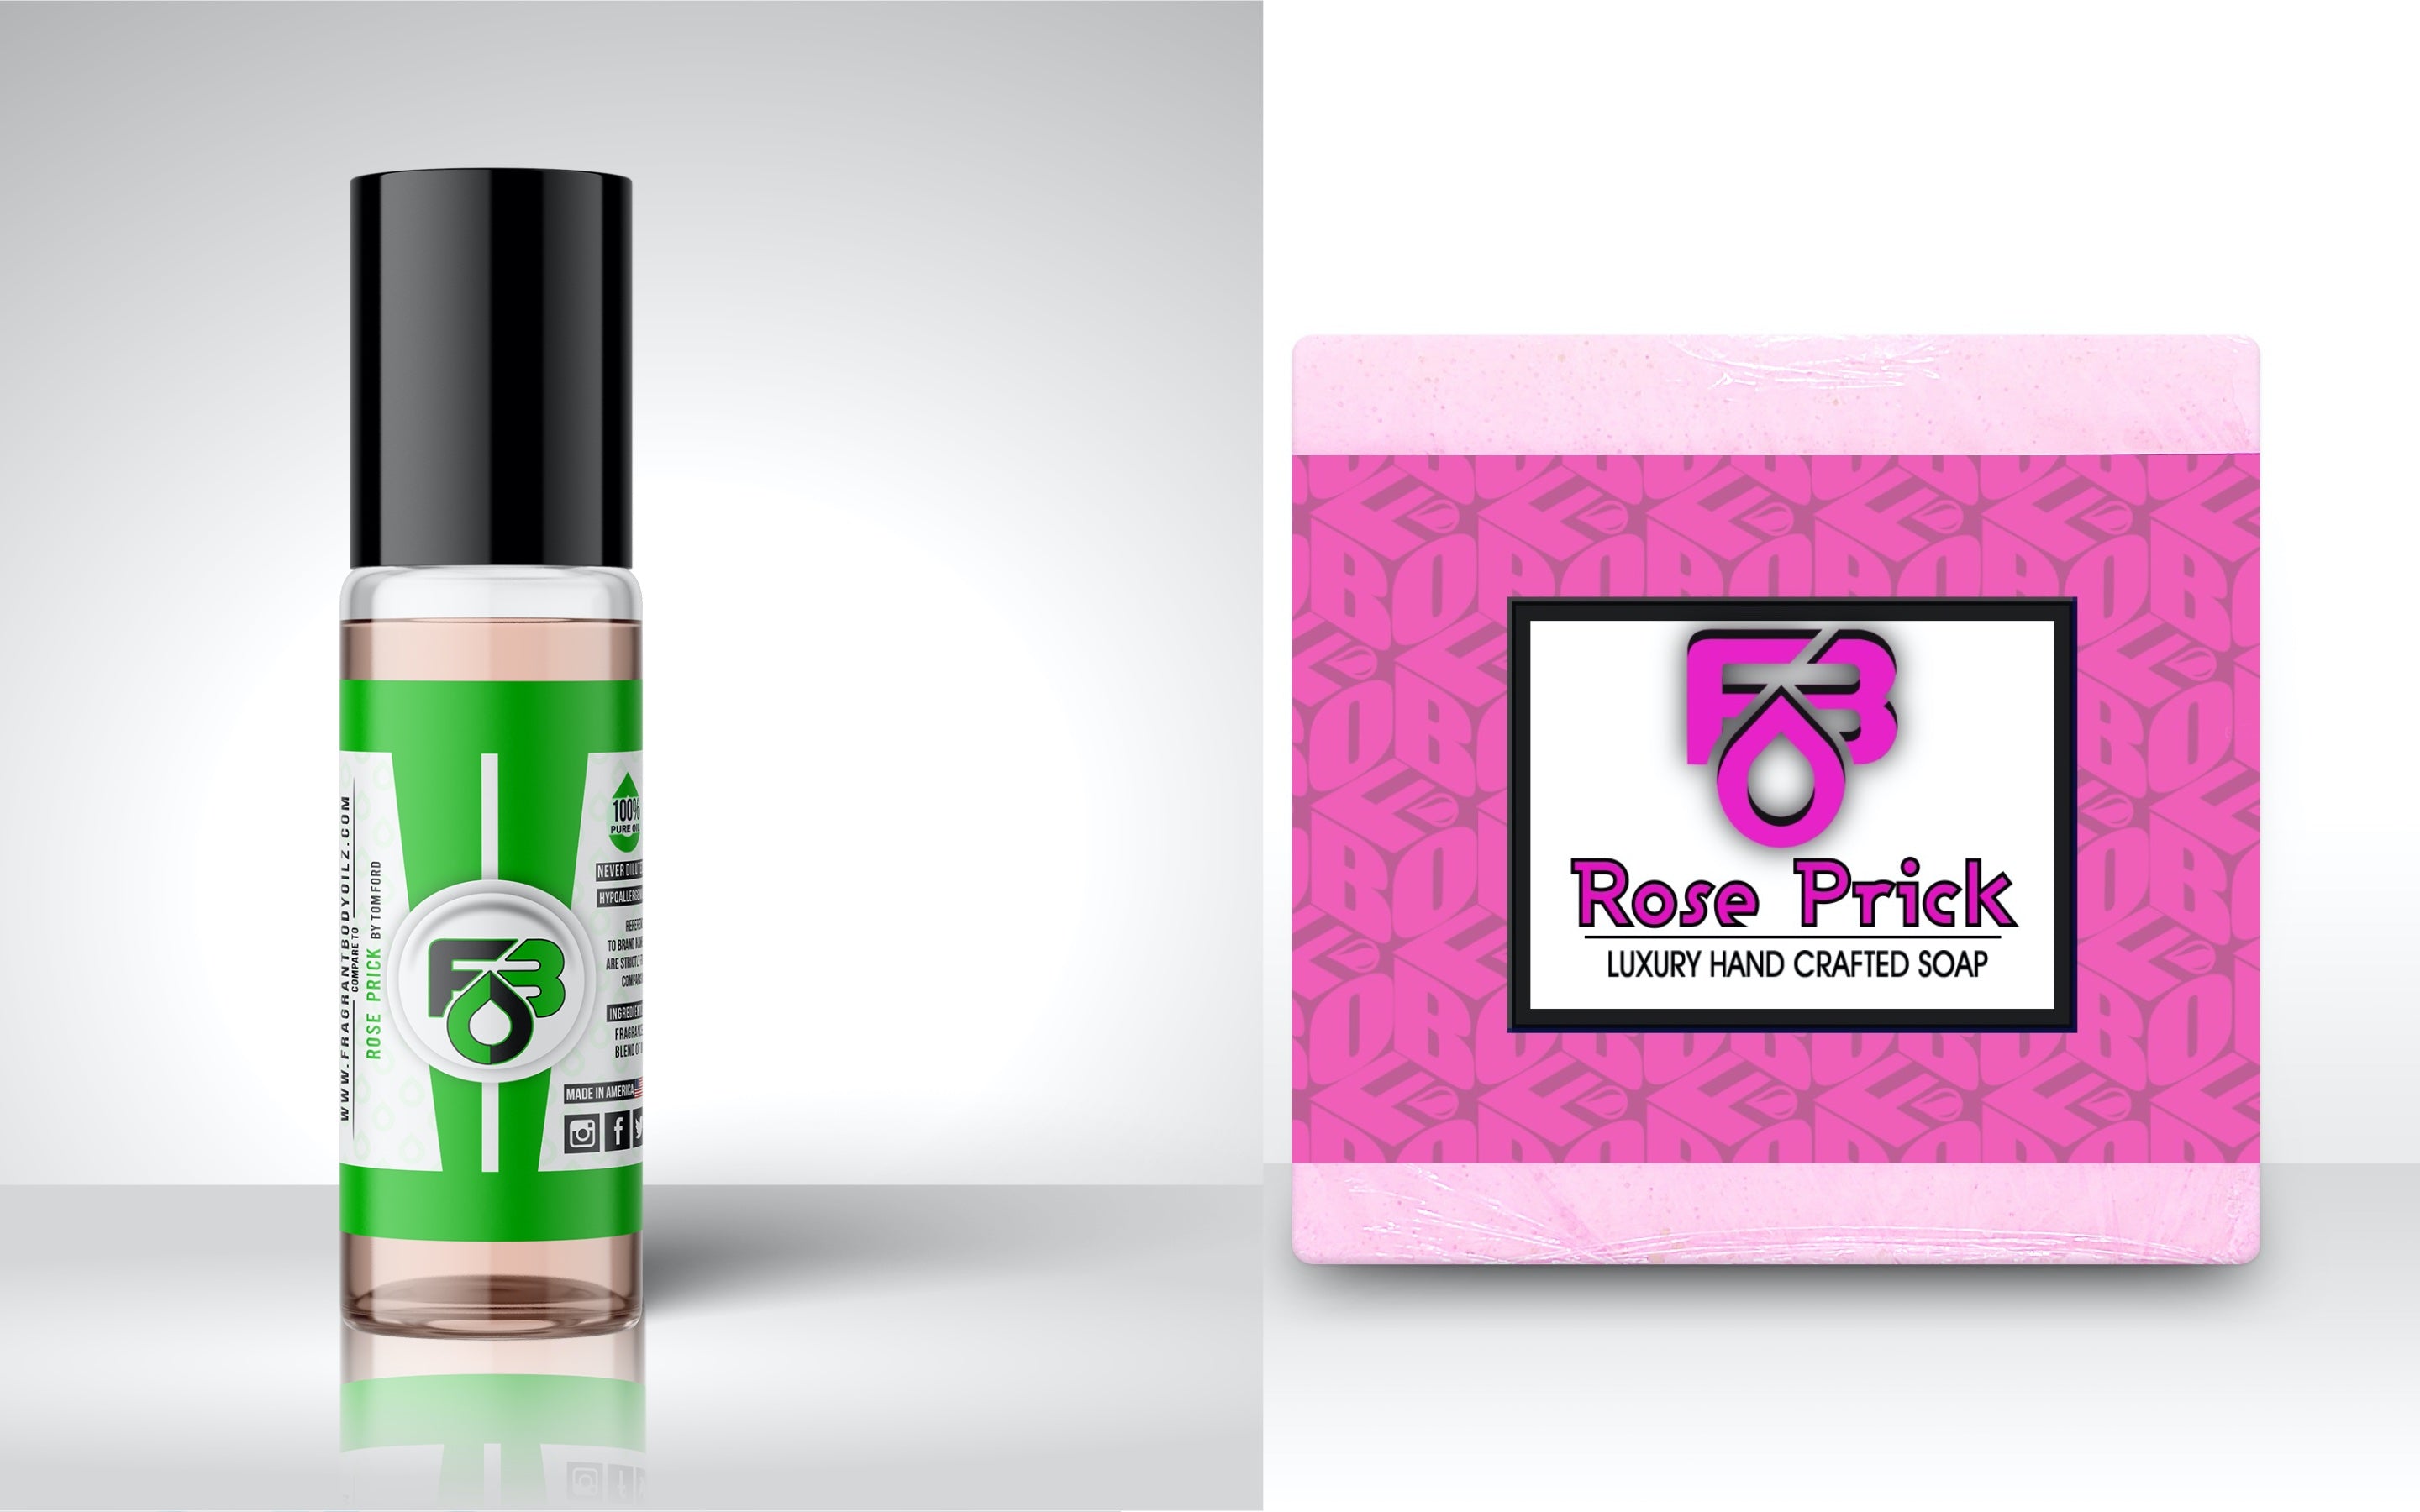 Compare Aroma to Rose Prick®